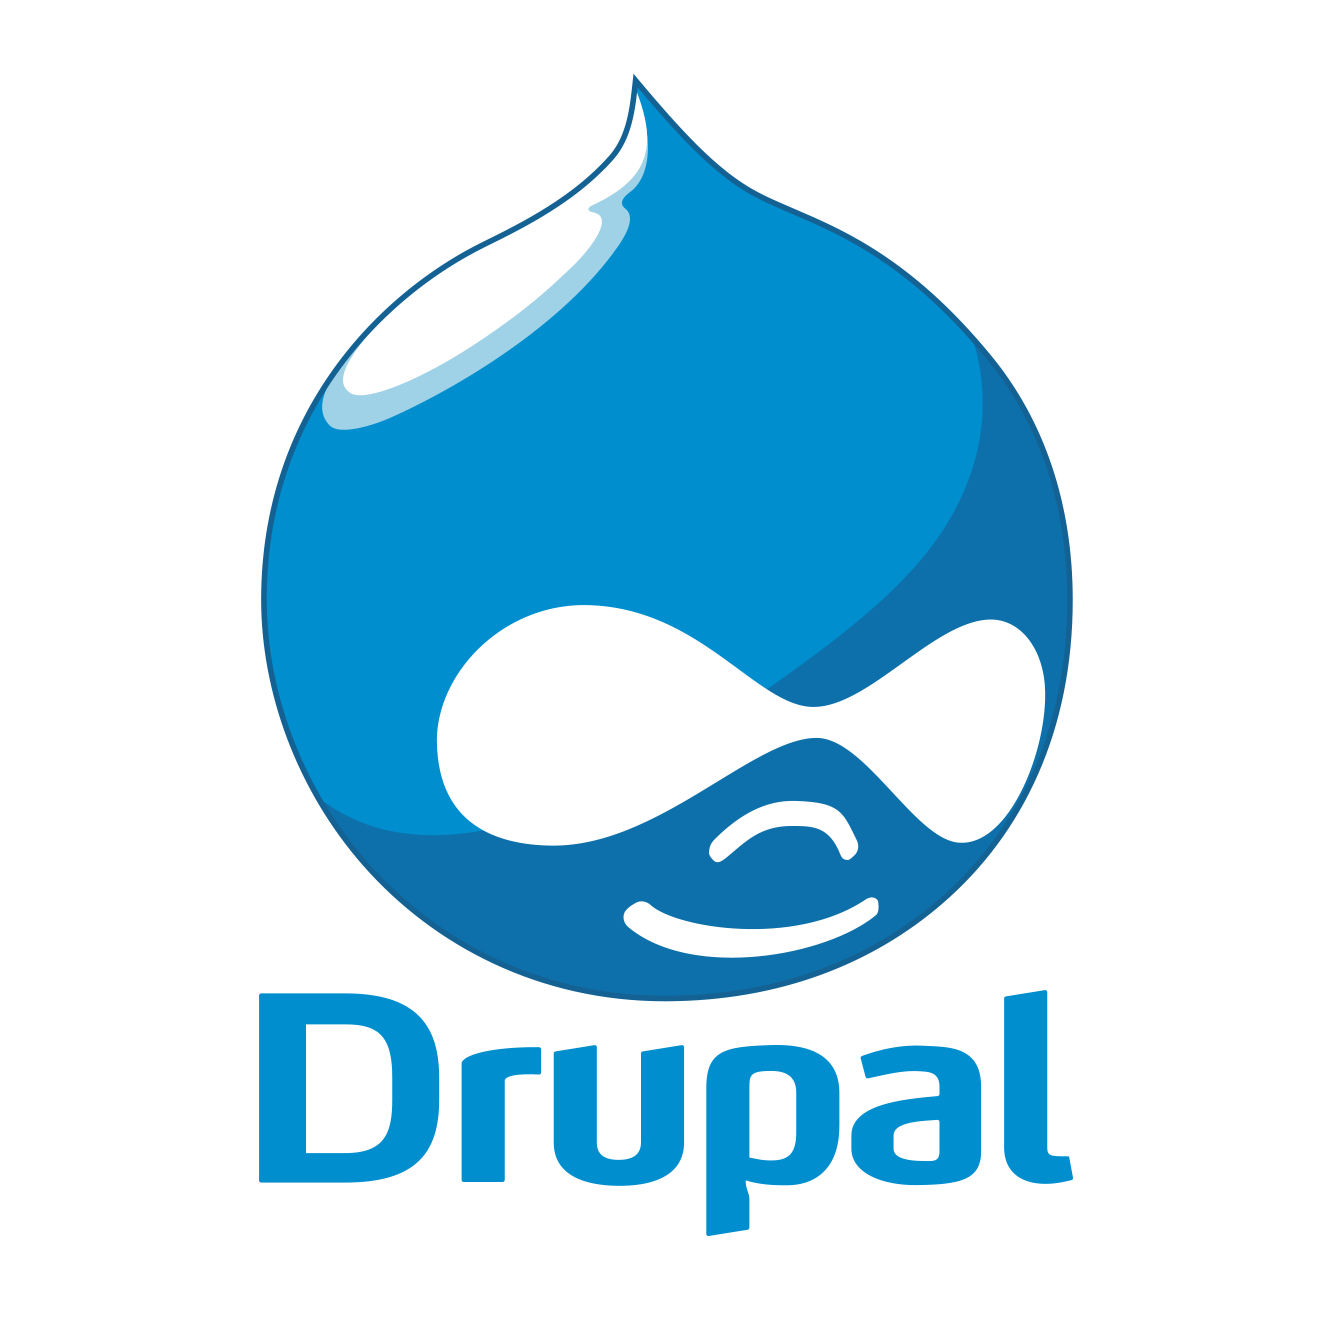 drupal website